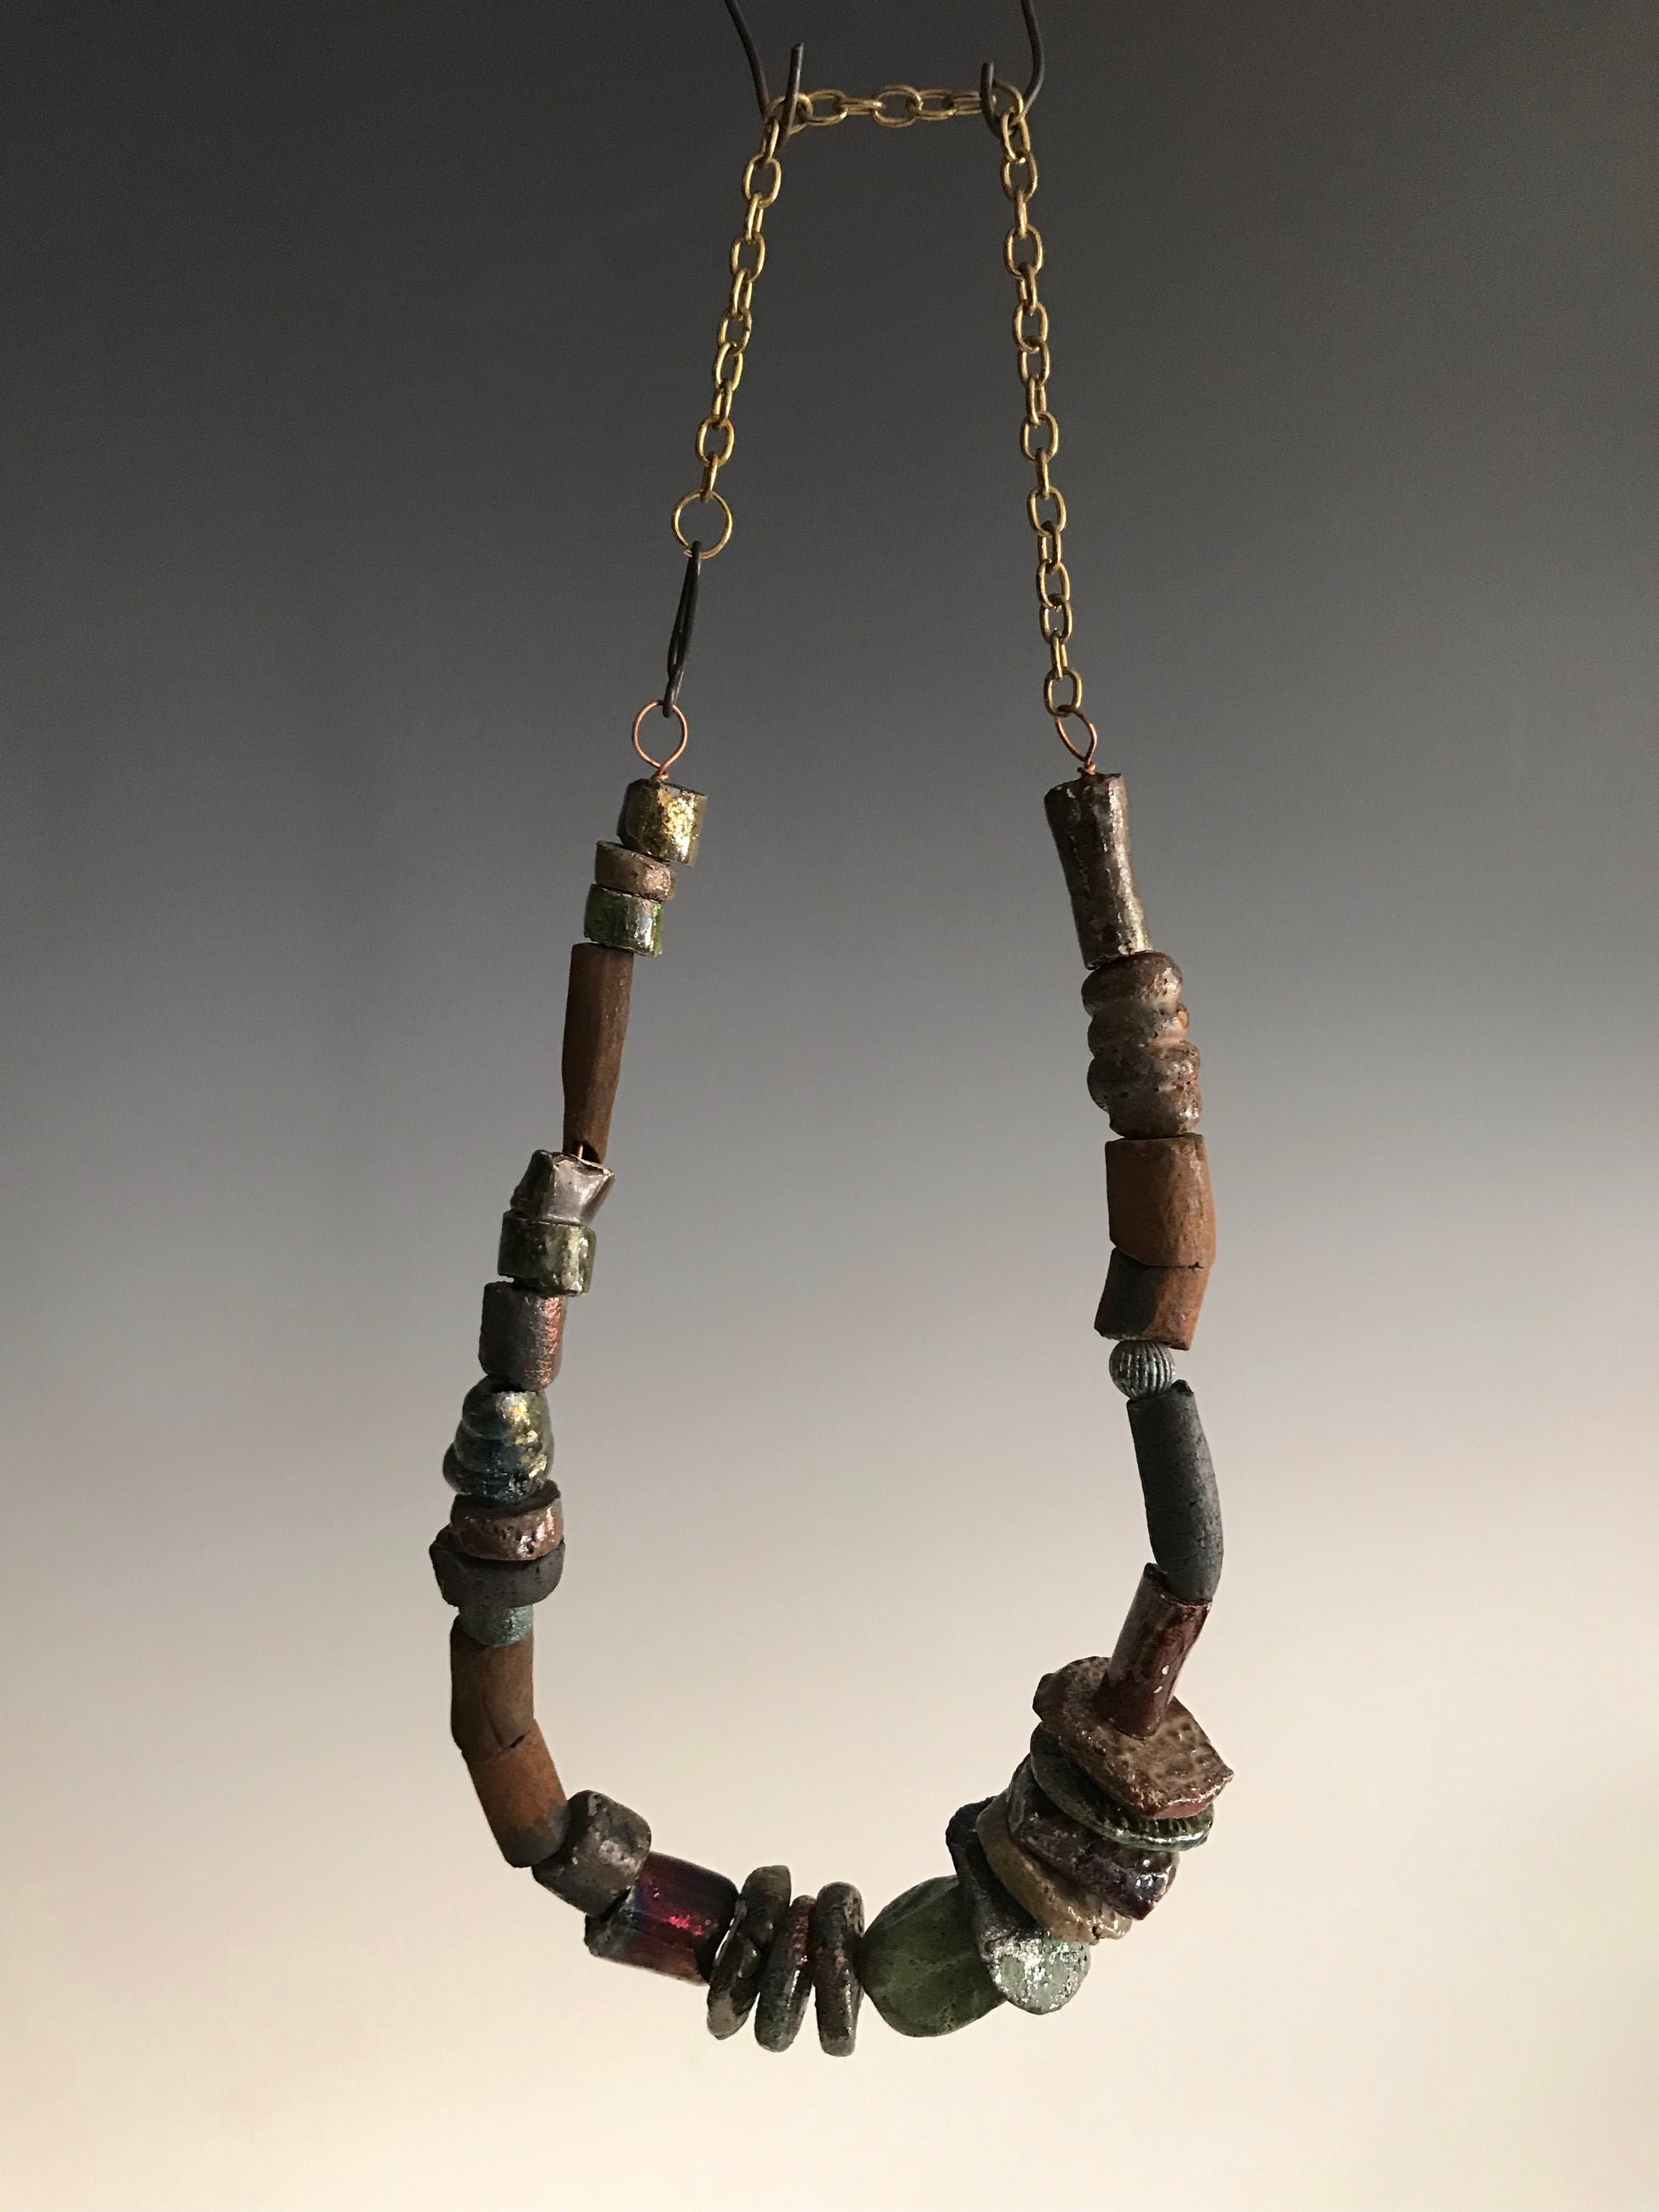 Nice!      30 handmade raku fired beads     26" in length with chain     5.2 oz